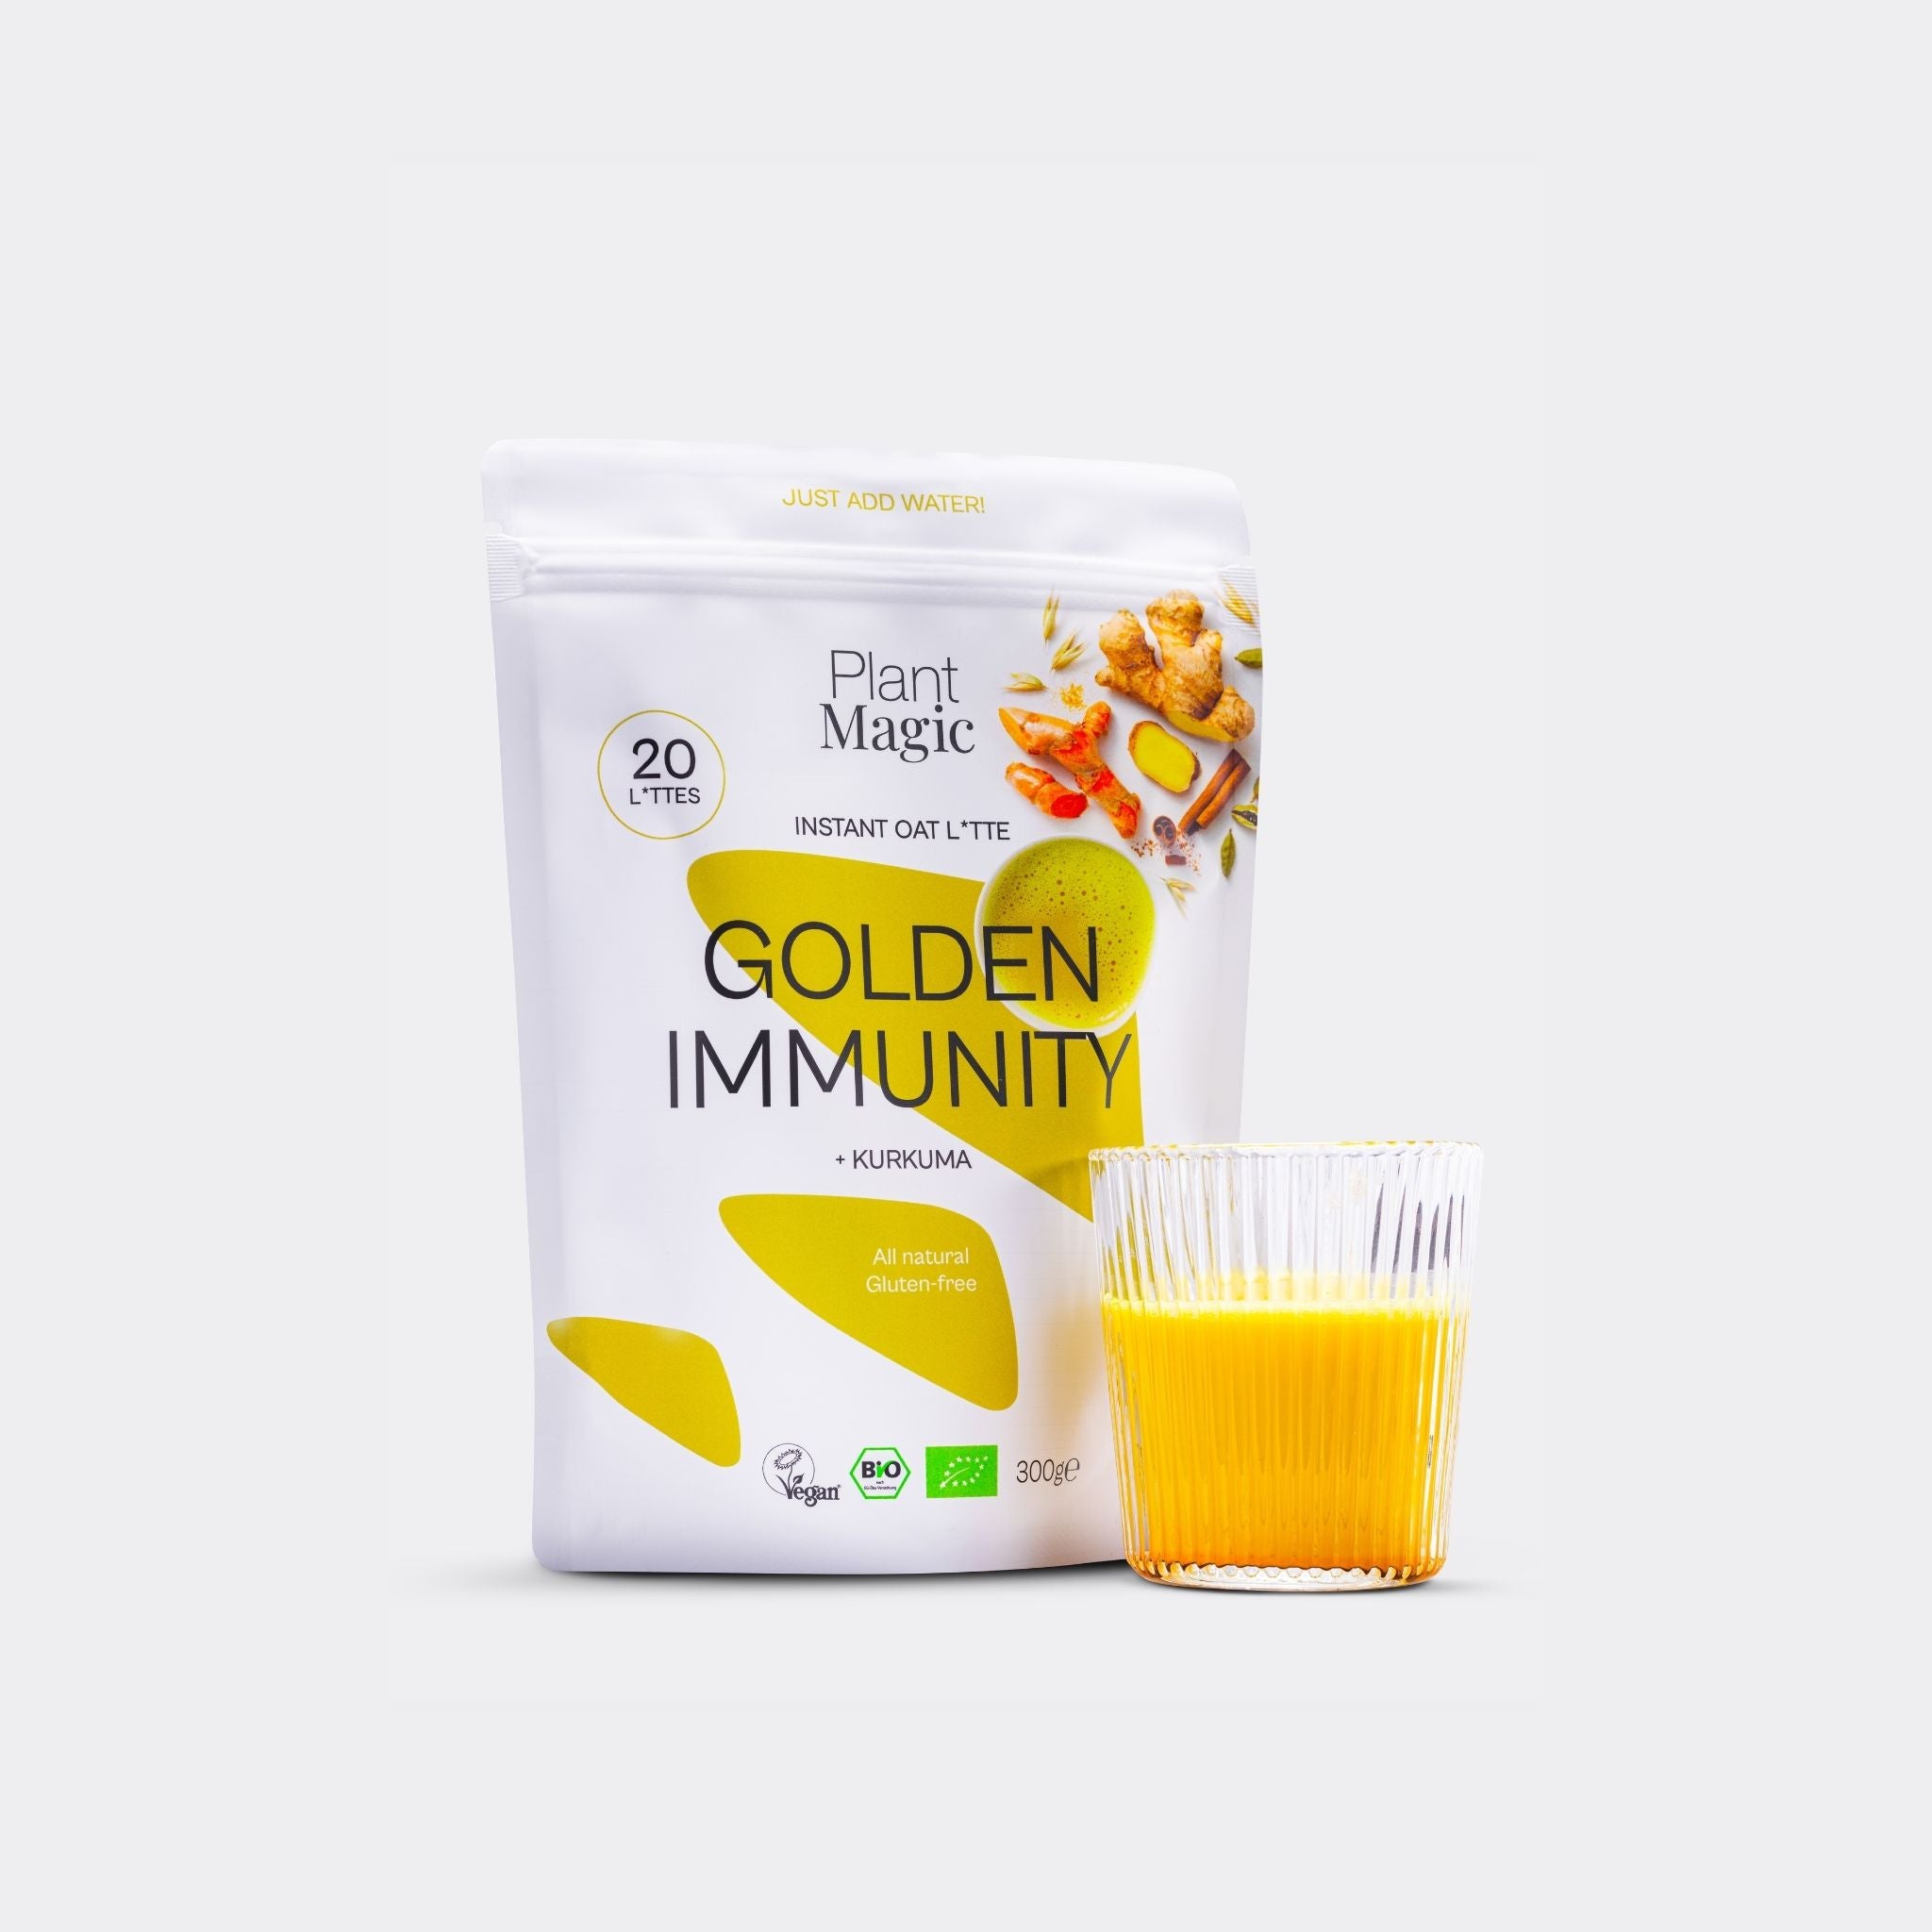 Golden Immunity 300g powder